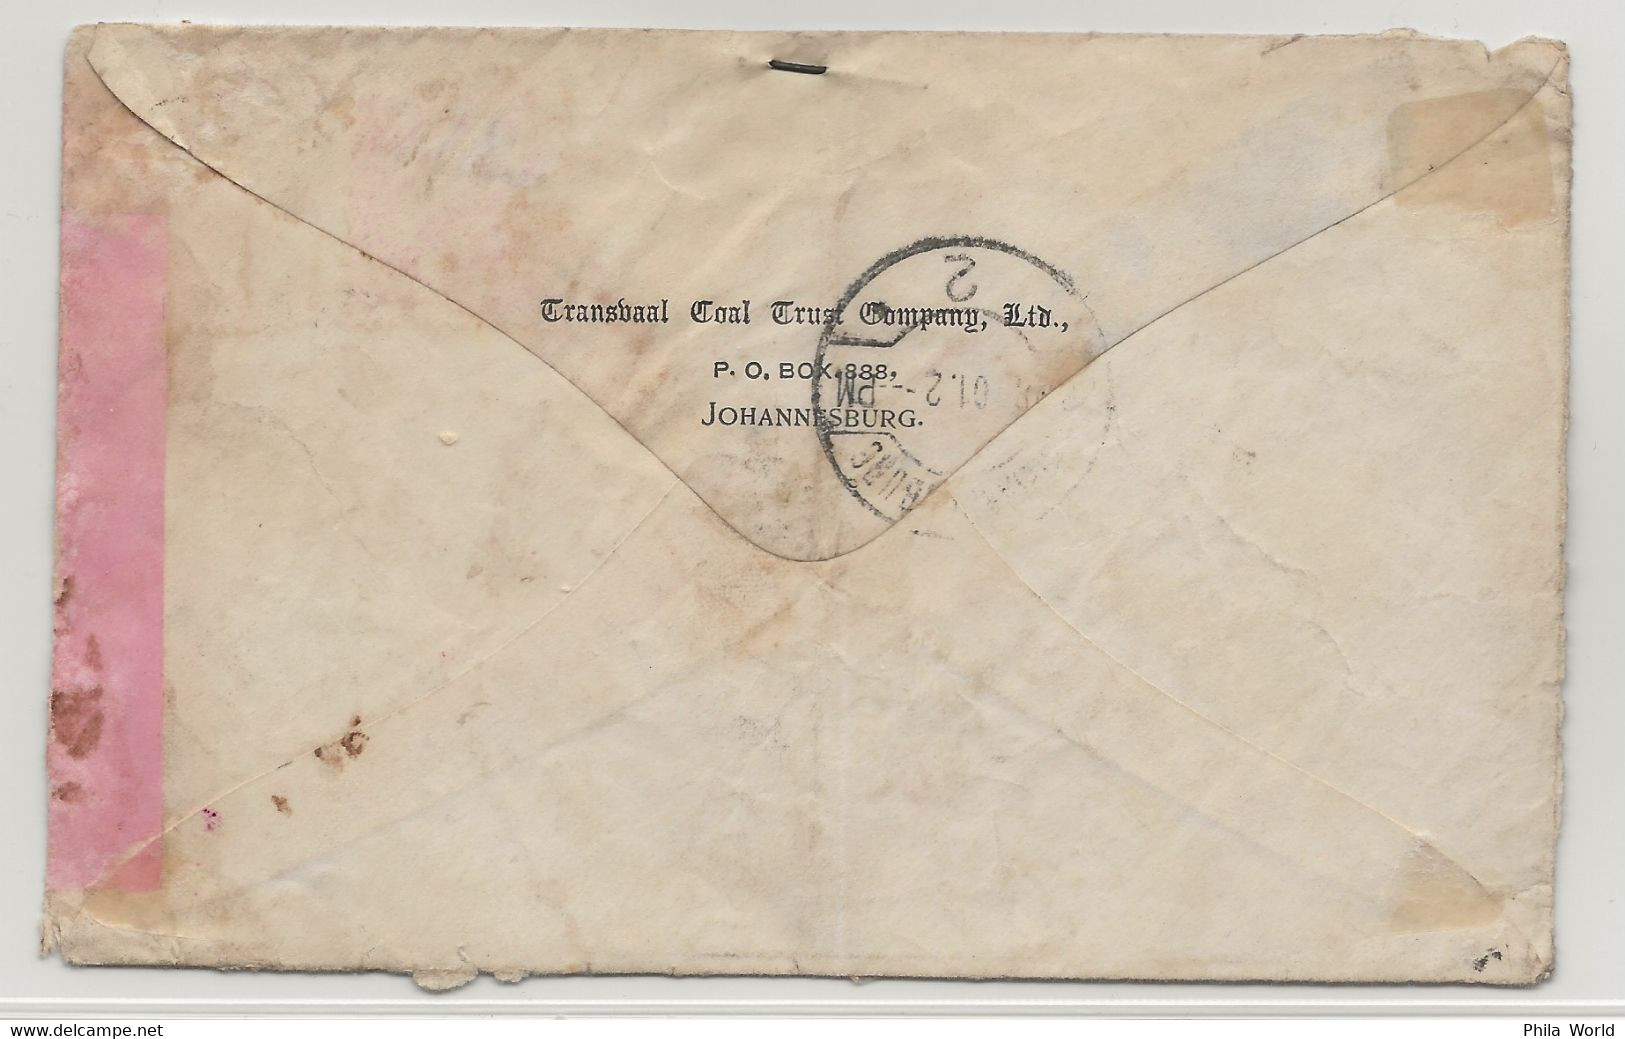 TRANSVAAL Afrique SUD Guerre BOERS 1901 Paris PASSED Censor Johannesburg Etiquette Label Enveloppe Ouverte Loi Martiale - Transvaal (1870-1909)